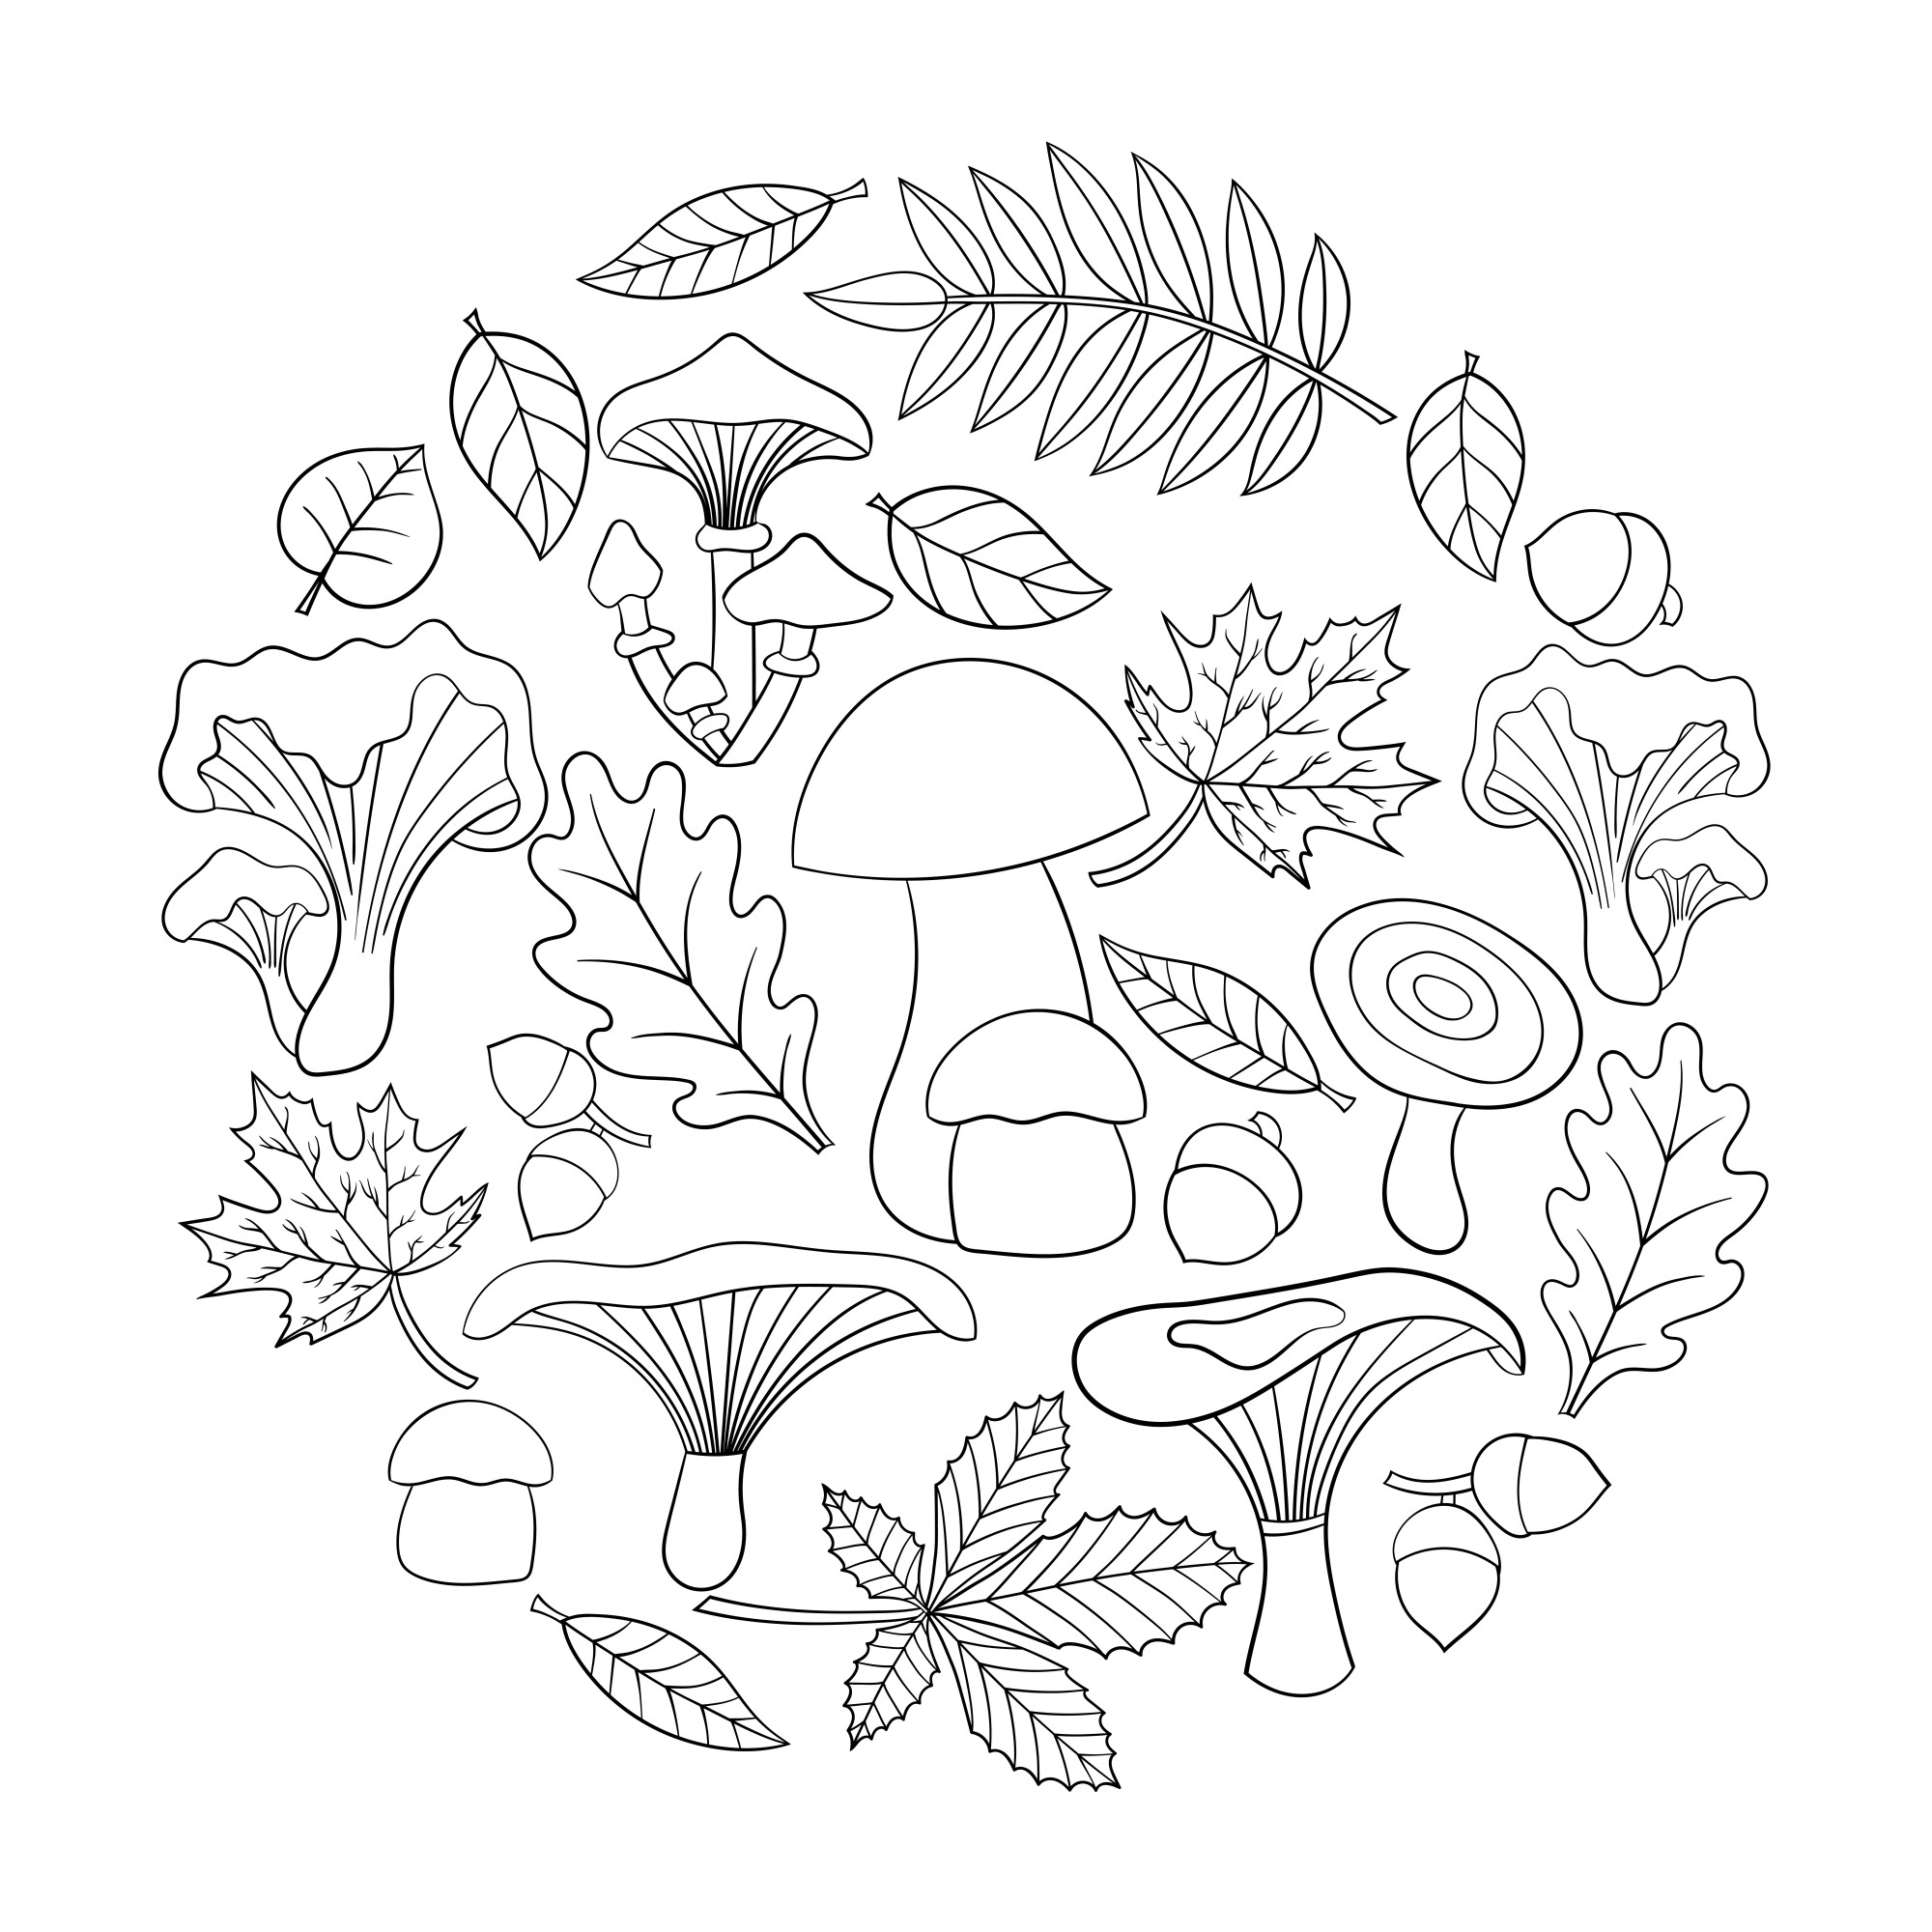 Раскраска для детей: грибы для поделки с осенними листьями